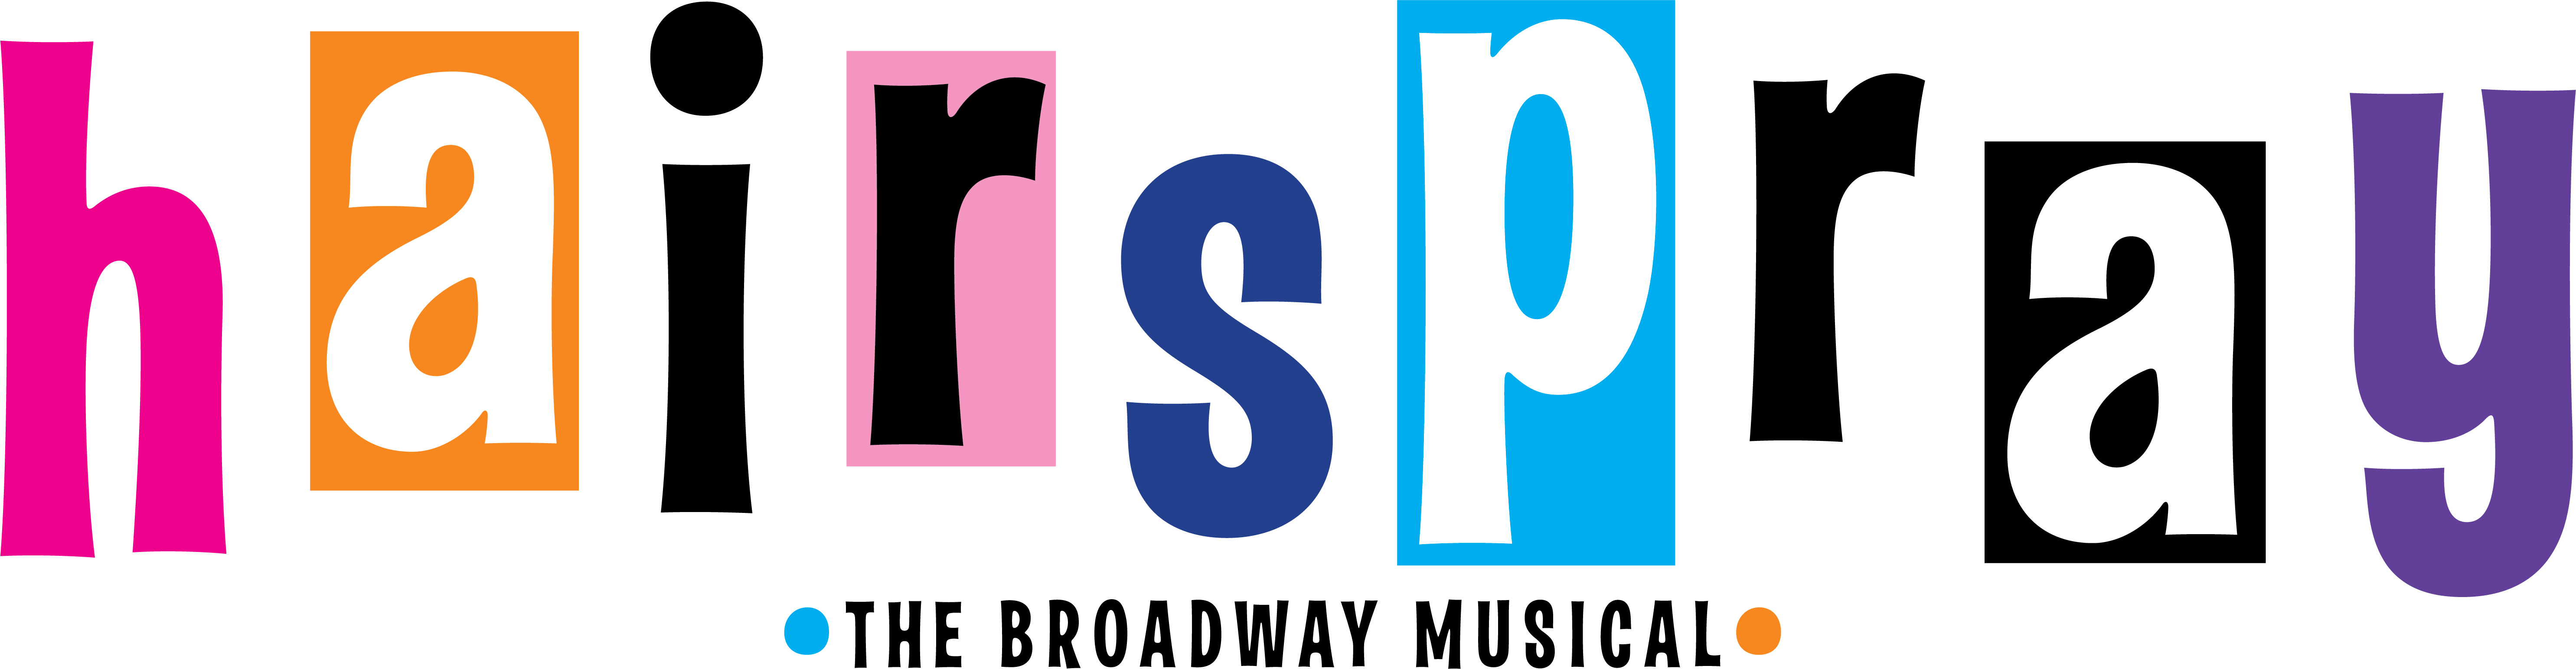 hairspray png logo